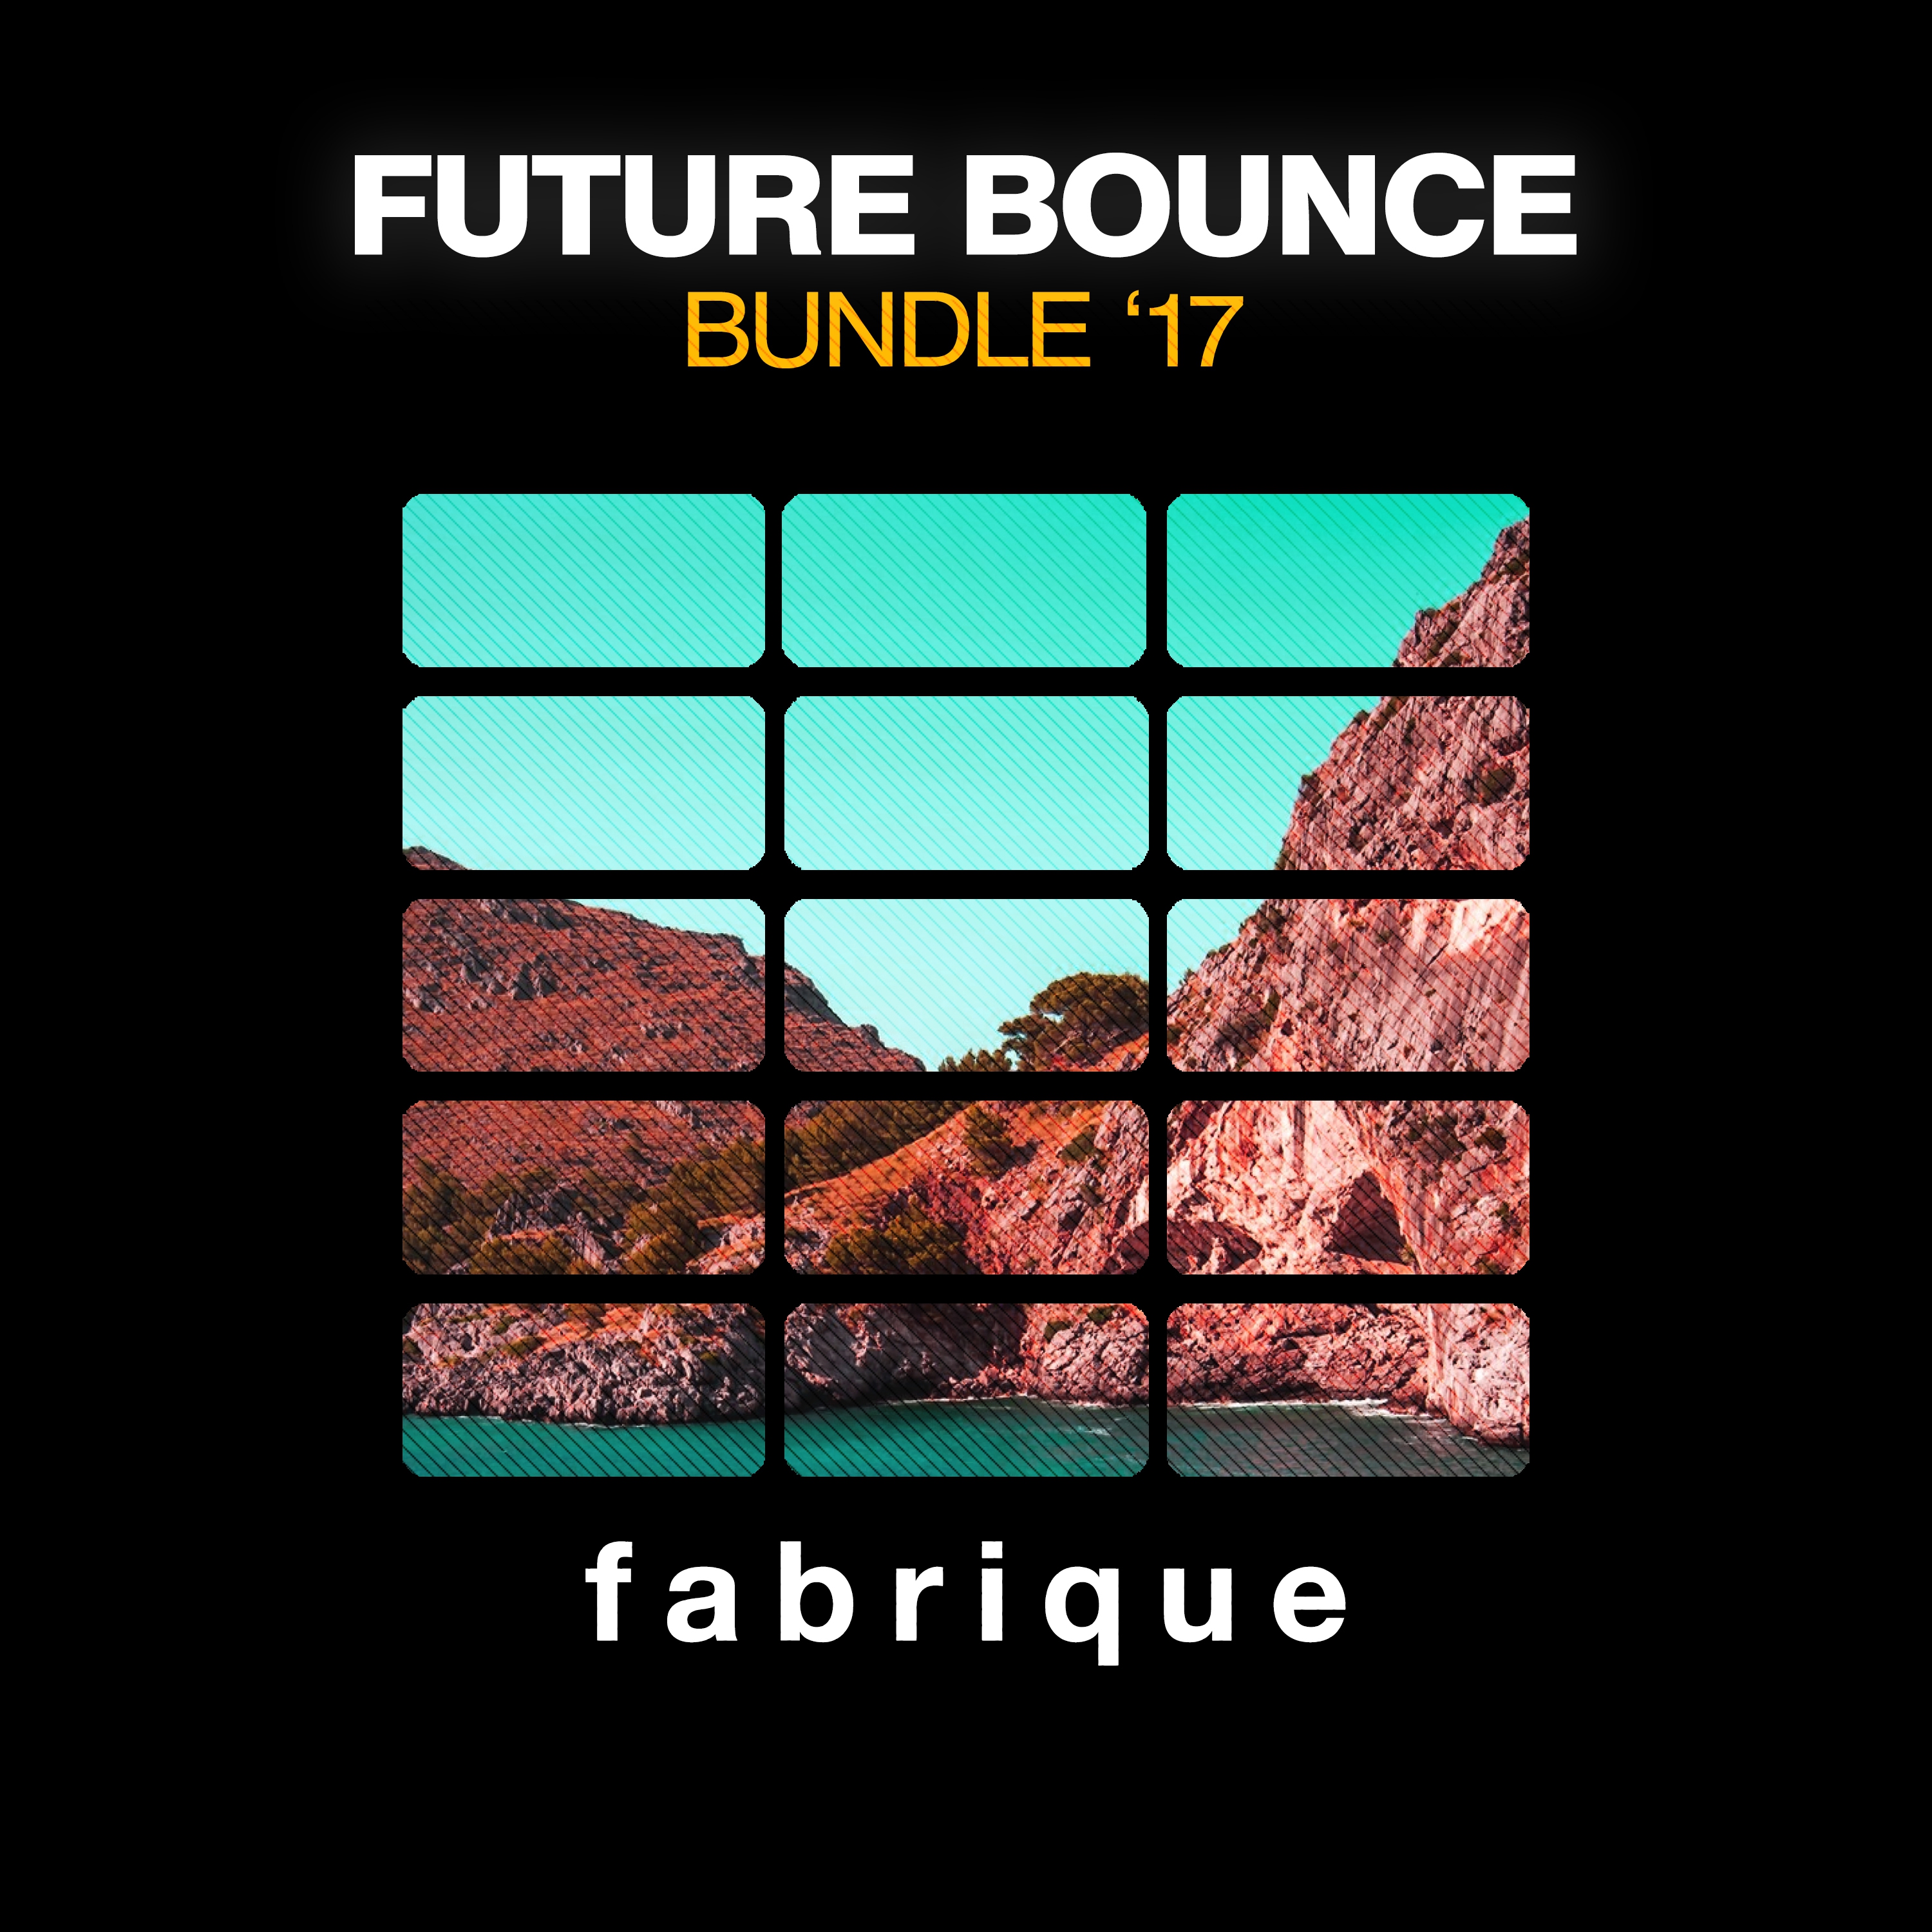 Future Bounce Bundle' 17